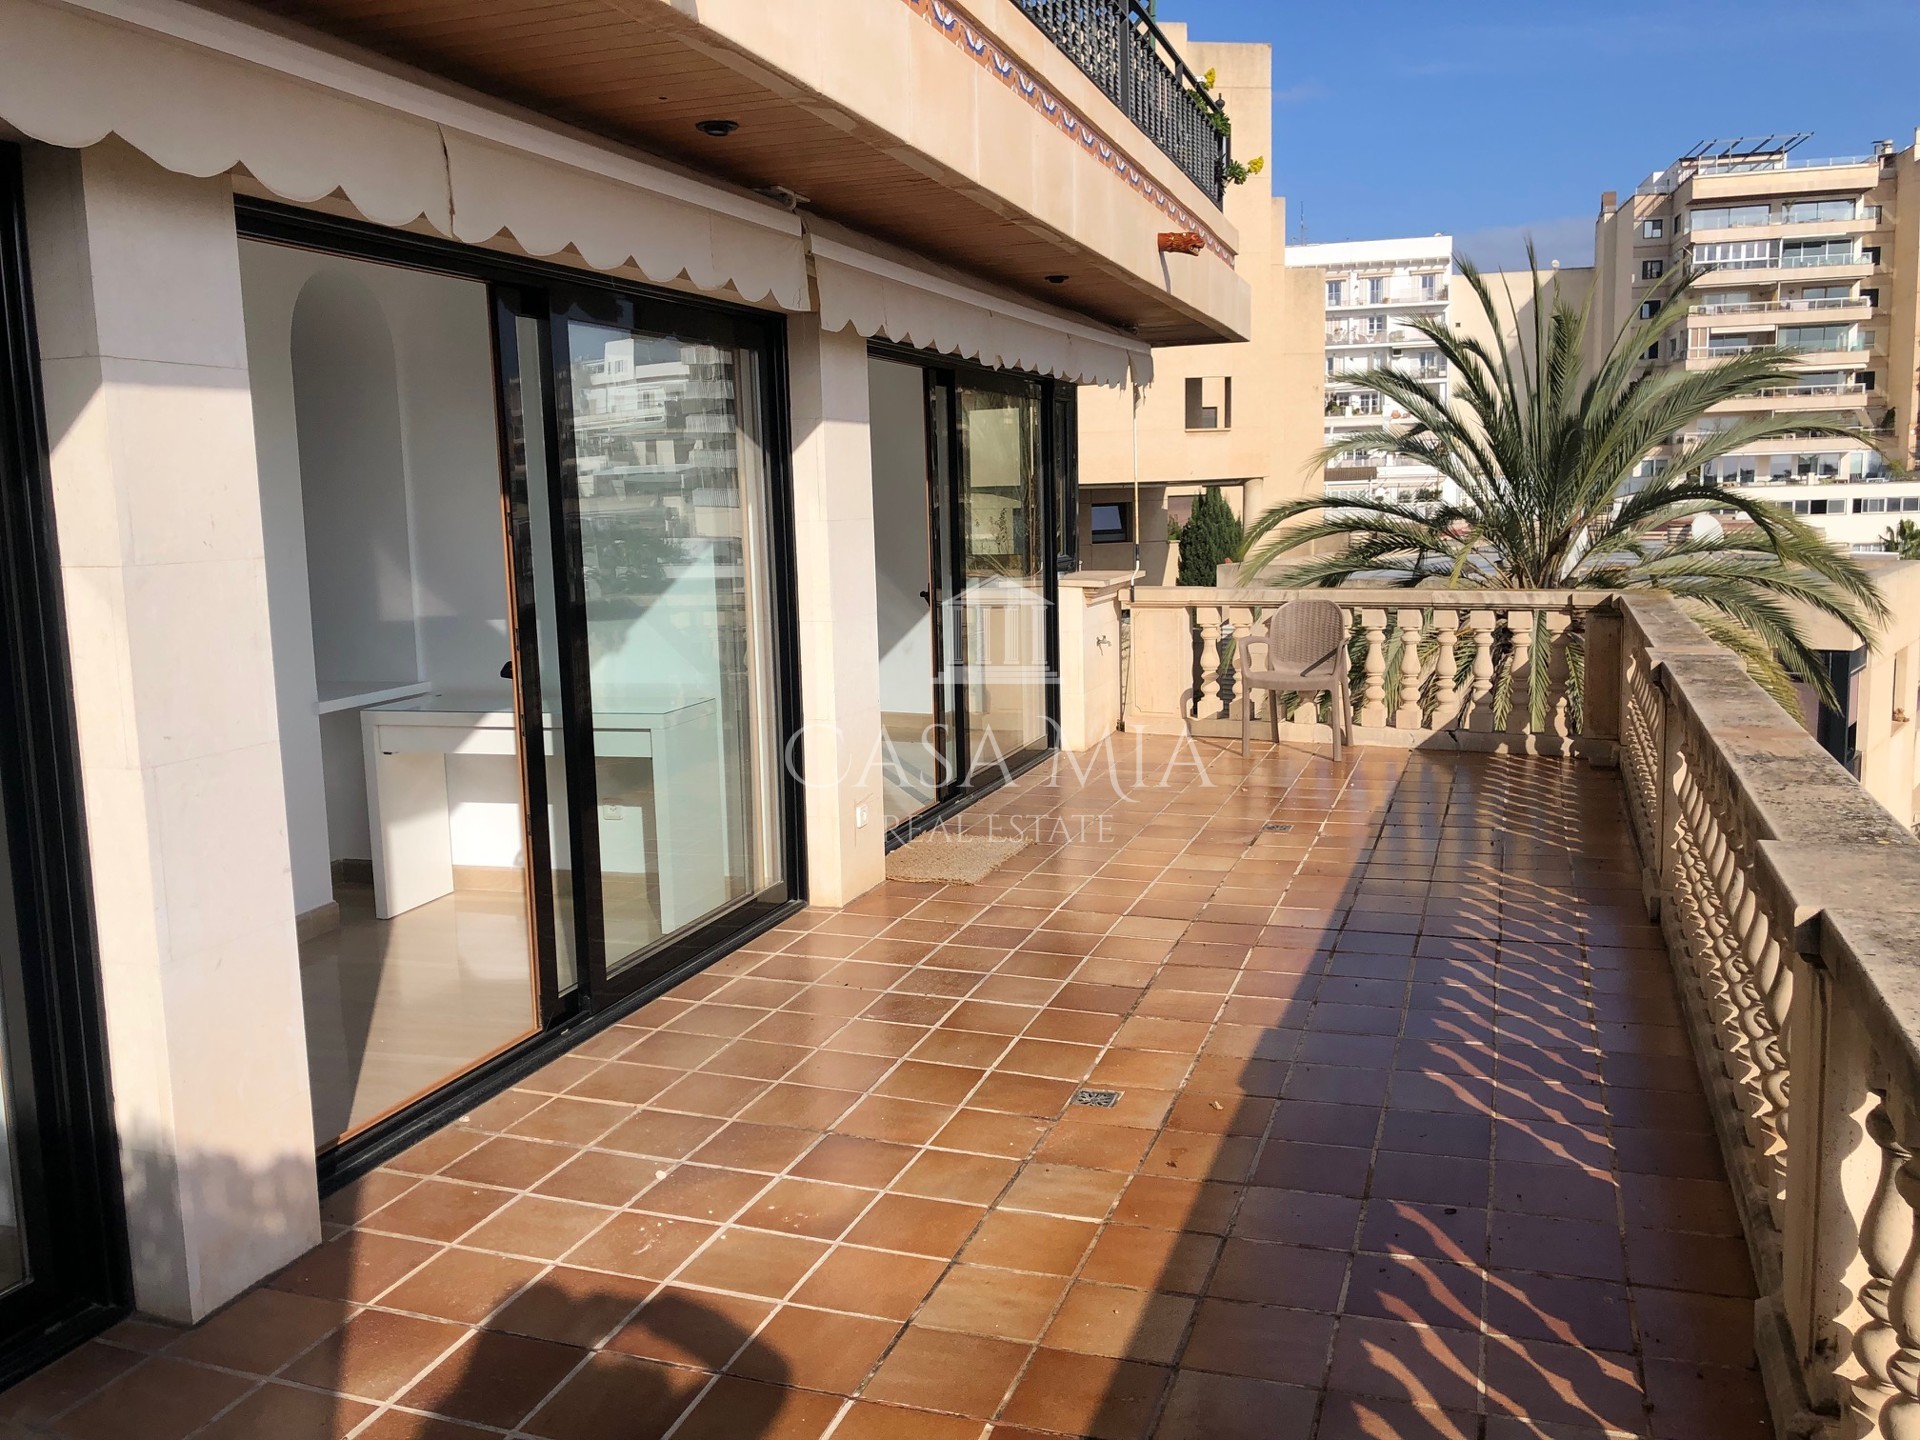 Mooie flat met zeezicht in de haven van Can Barbara, Palma